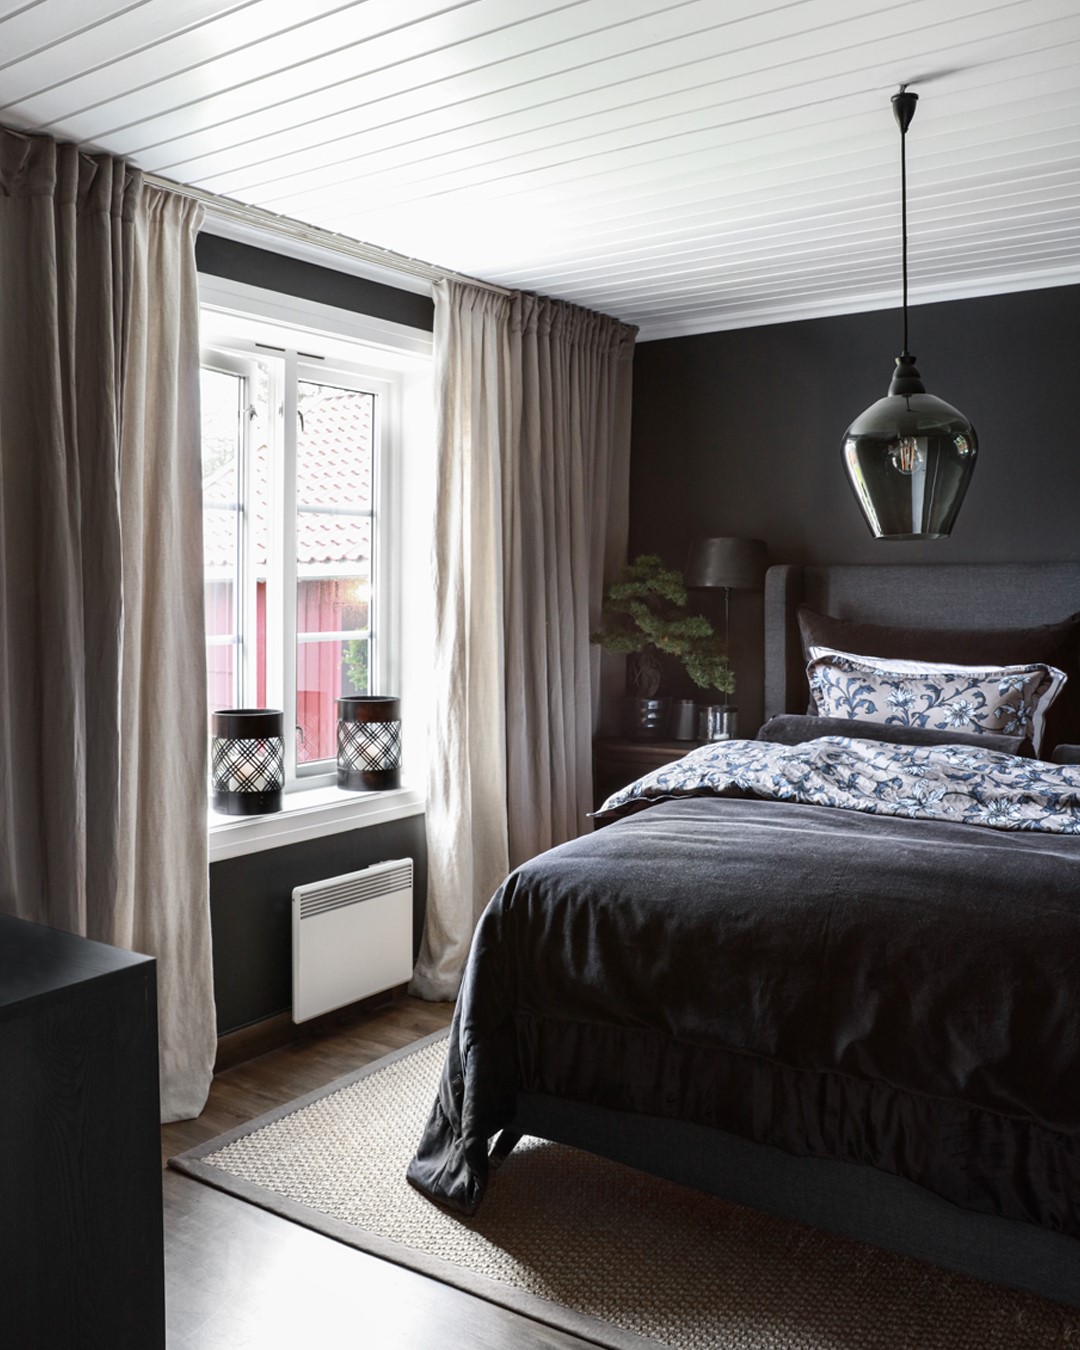 Halvor Bakkes soverom med mørke vegger, dobbeltseng og vinduer med hvite doble gardinskinner og to lag med gardiner. Foto.